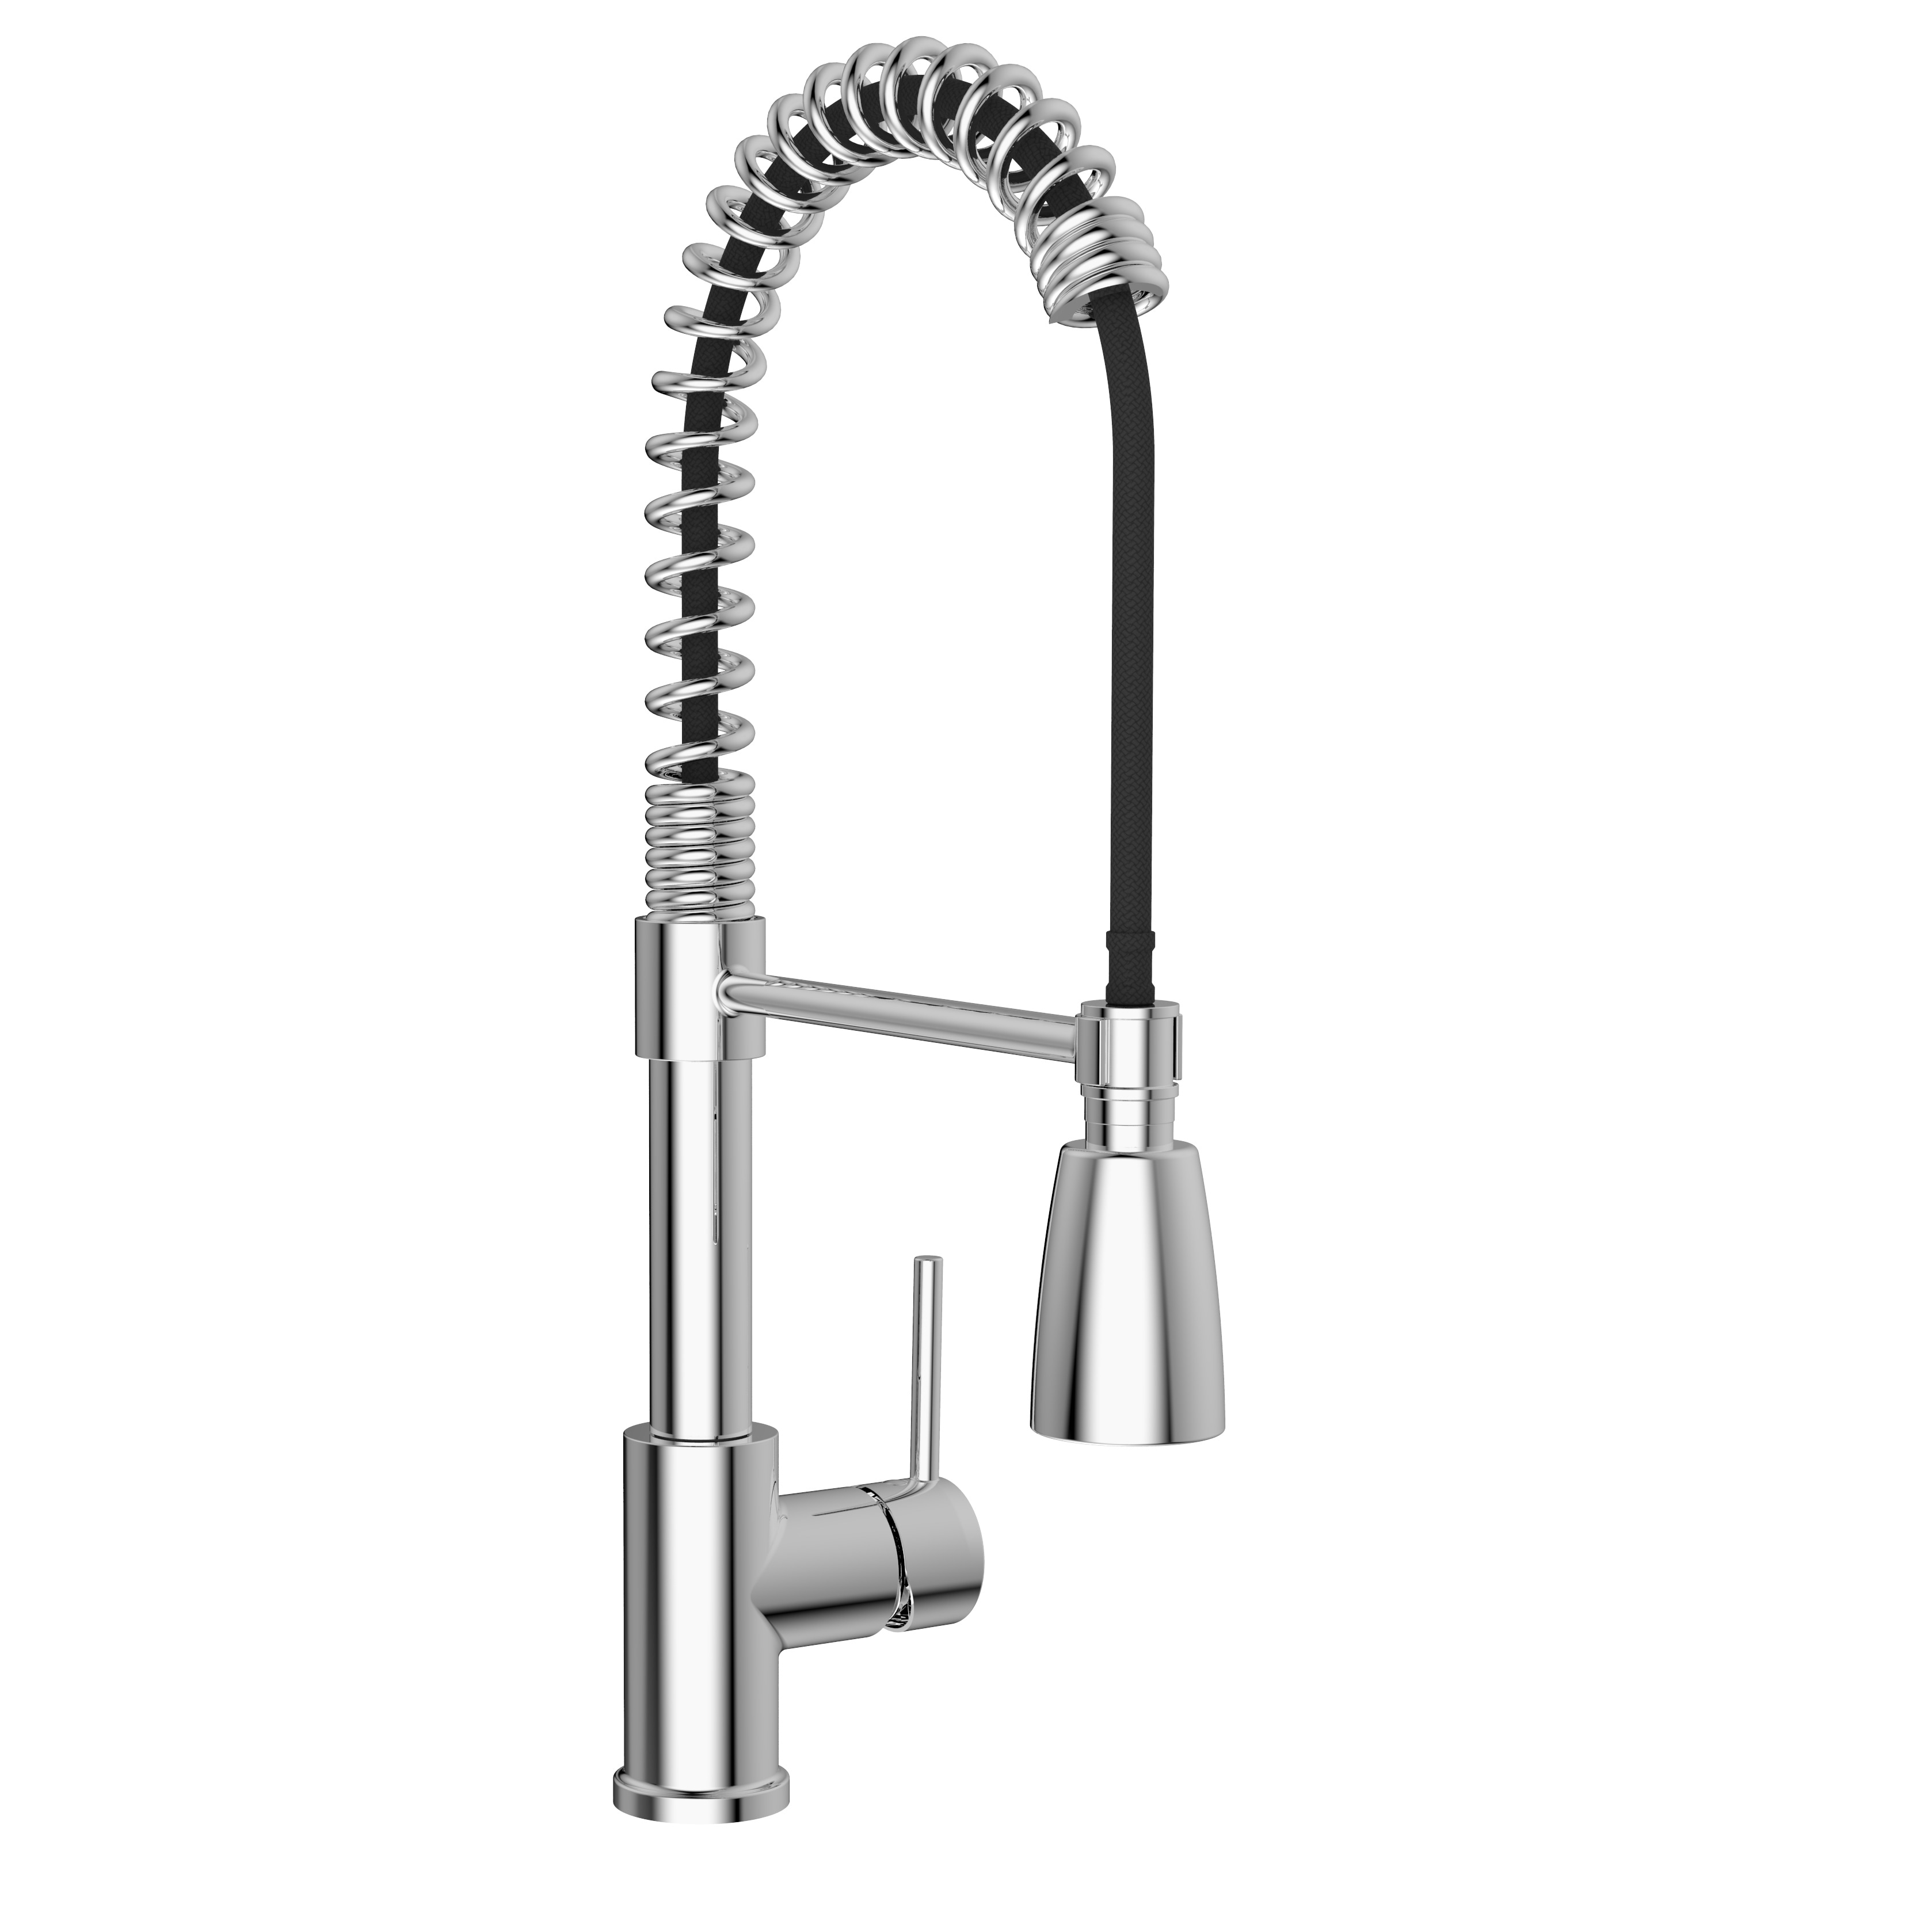 Shop Belanger Pro78ccp2 Commercial Style Single Handle Pull Down Kitchen Faucet